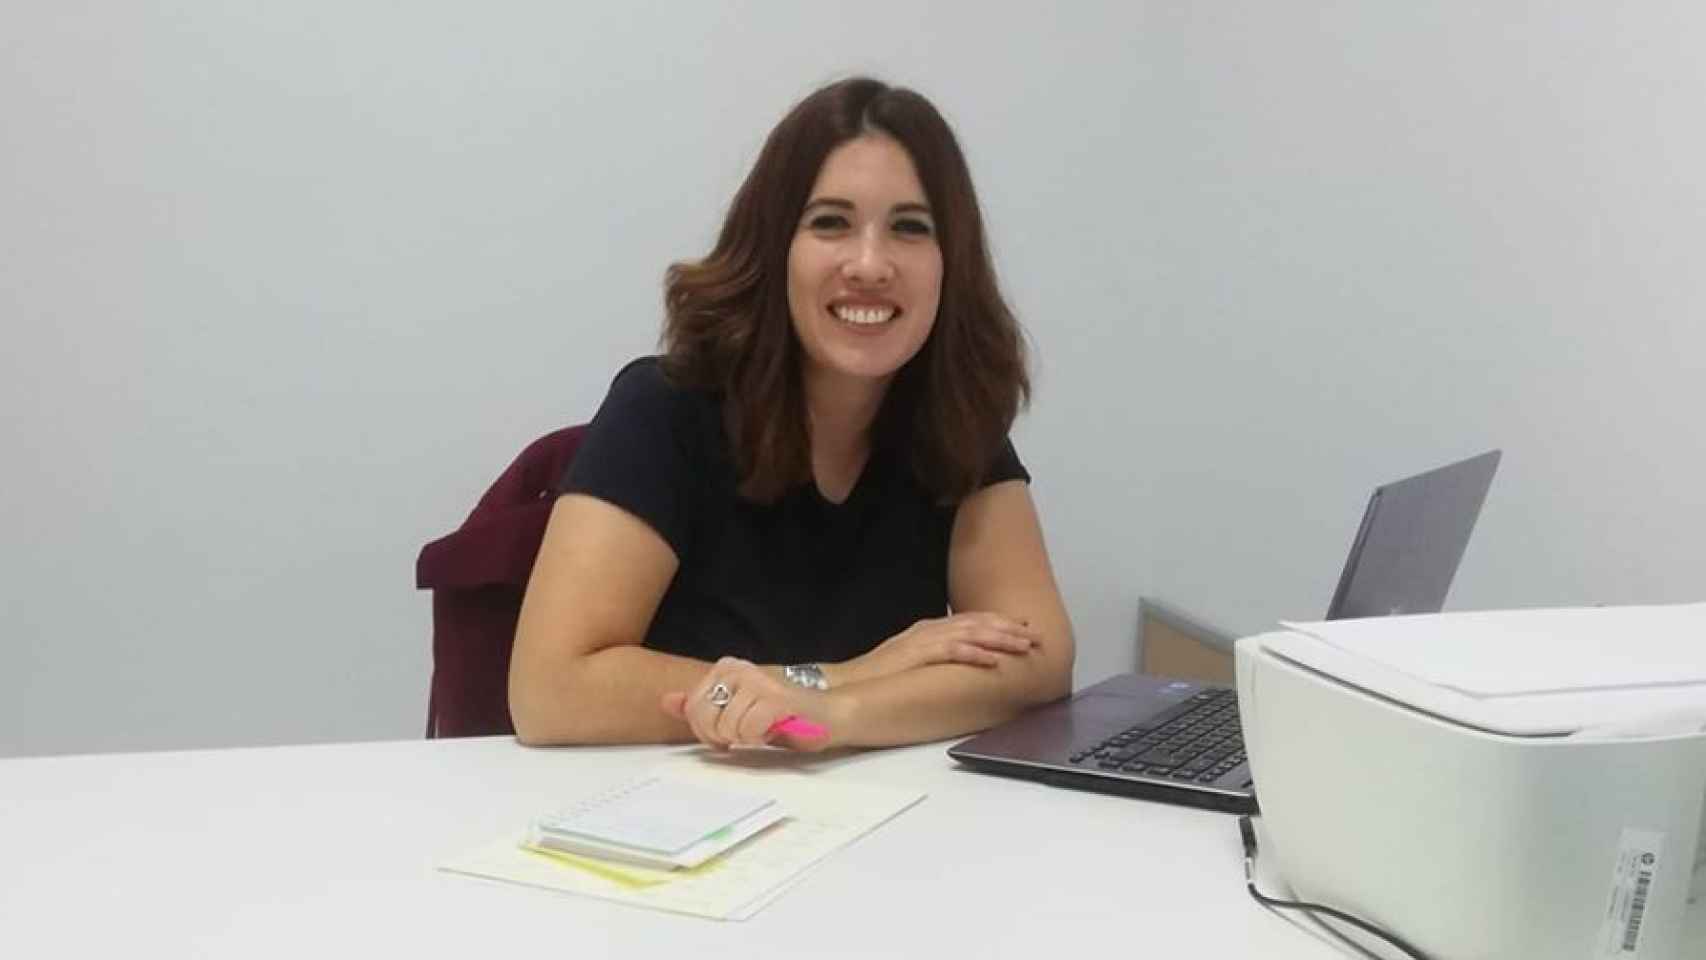 Davinia Simón Múñoz, trabajadora social y gestora de la empresa Formación Vida, metida en la polémica tras una denuncia.